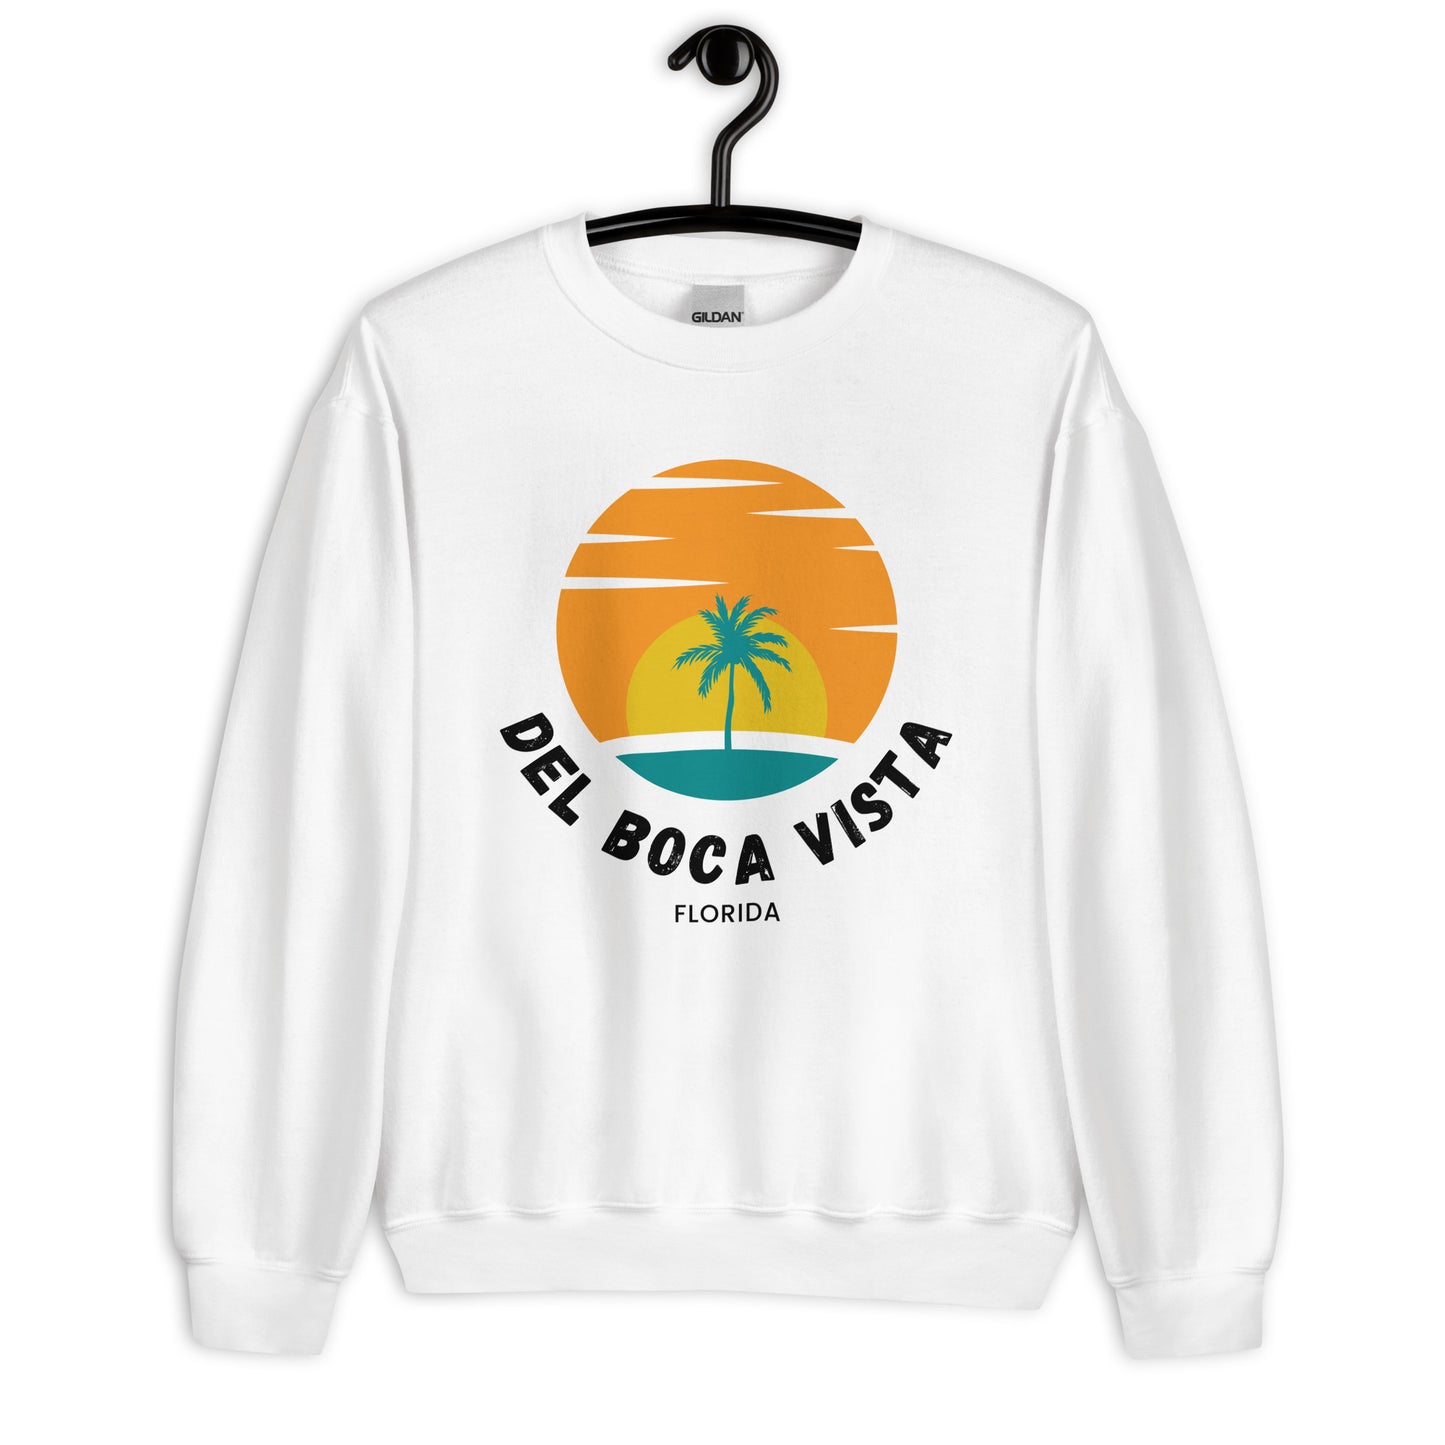 Del Boca Vista Comedy Sweatshirt